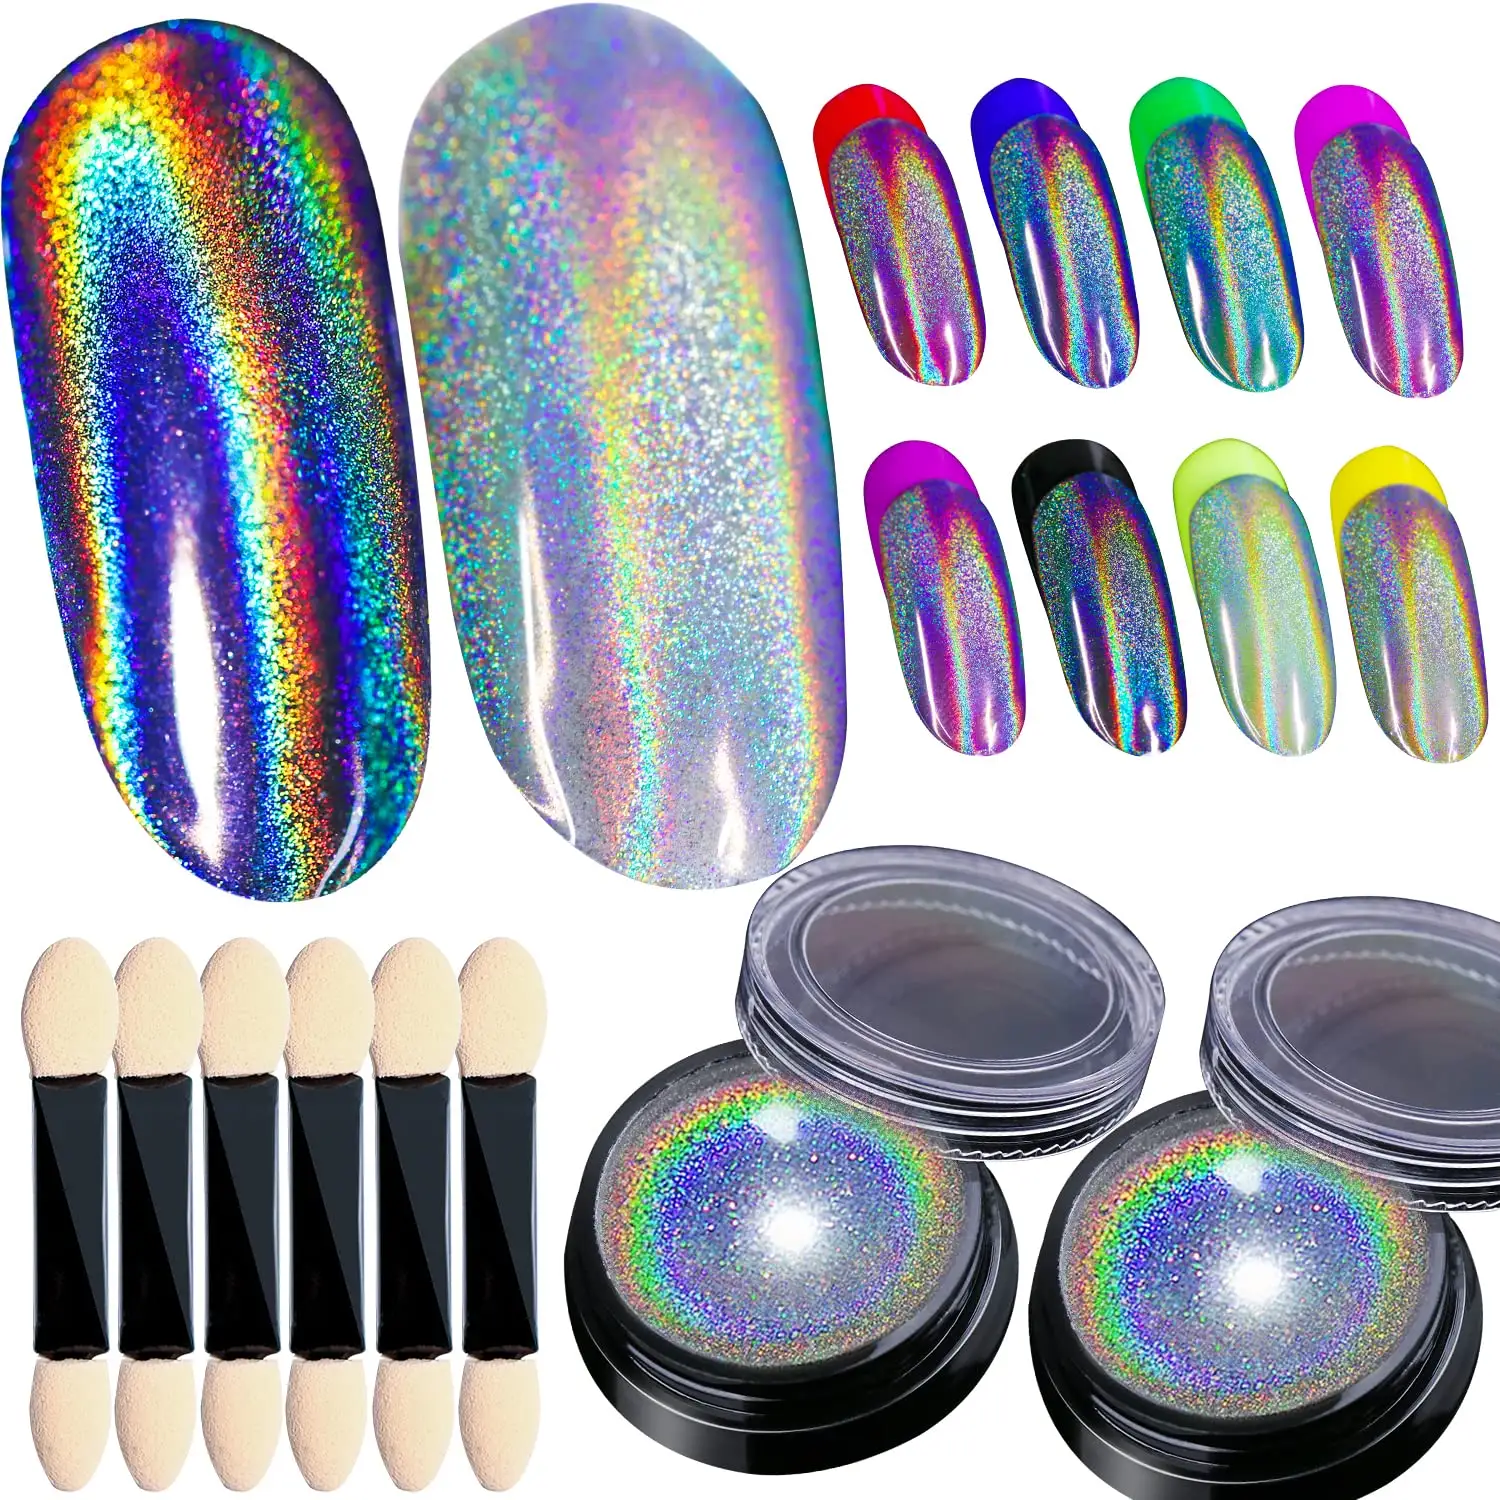 Vendita calda Glitter Nail Art olografico specchio cromato in polvere a basso prezzo del negozio al dettaglio prodotto